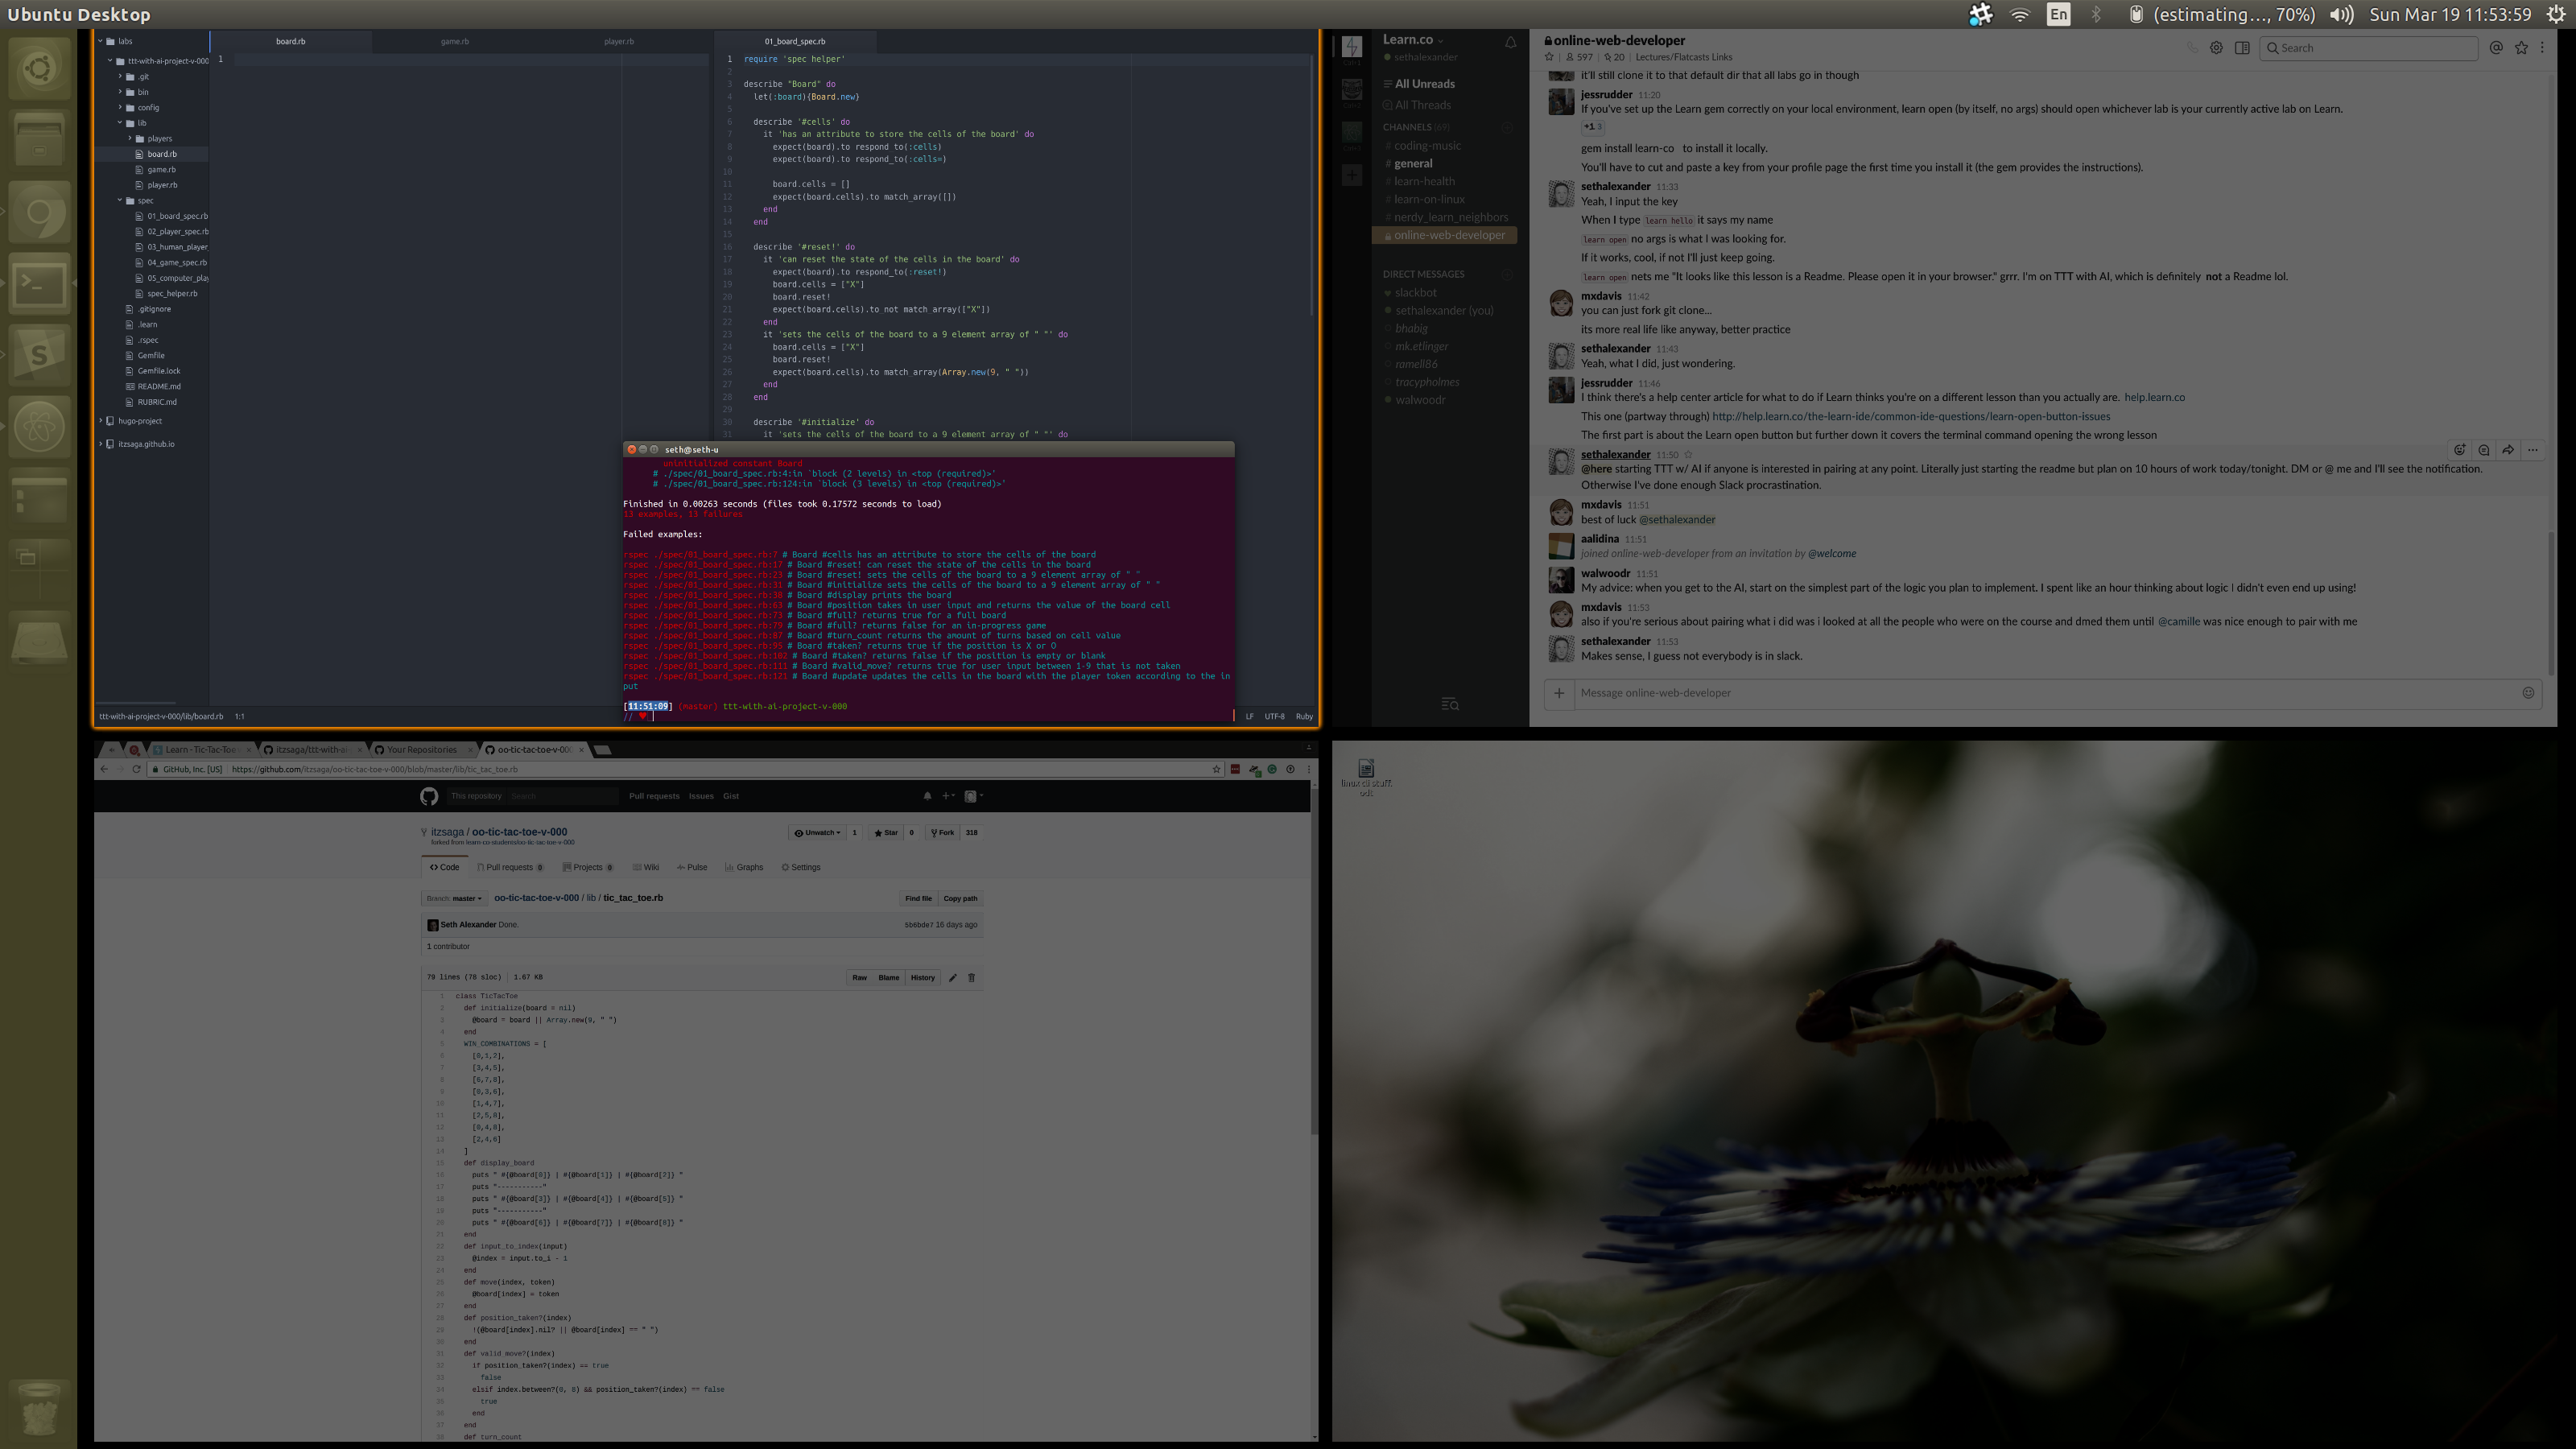 Ubuntu Desktop workspaces overview